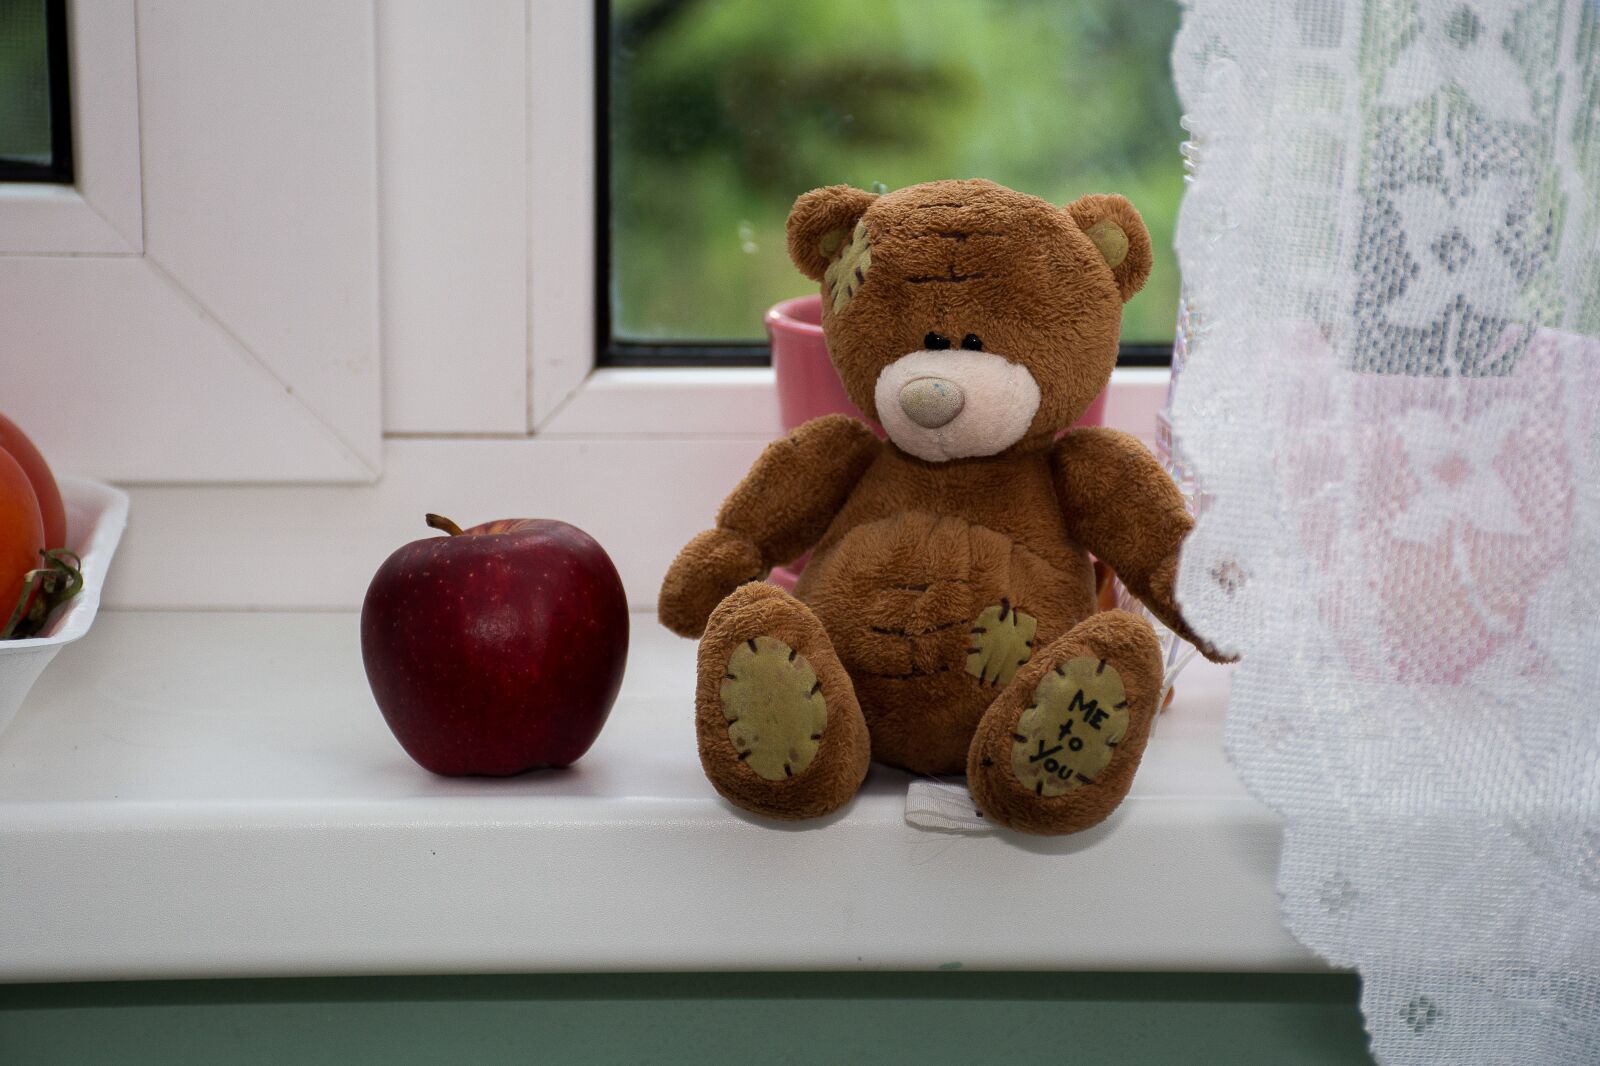 Nikon D7100 sample photo. Teddy, teddy bear, toy photography